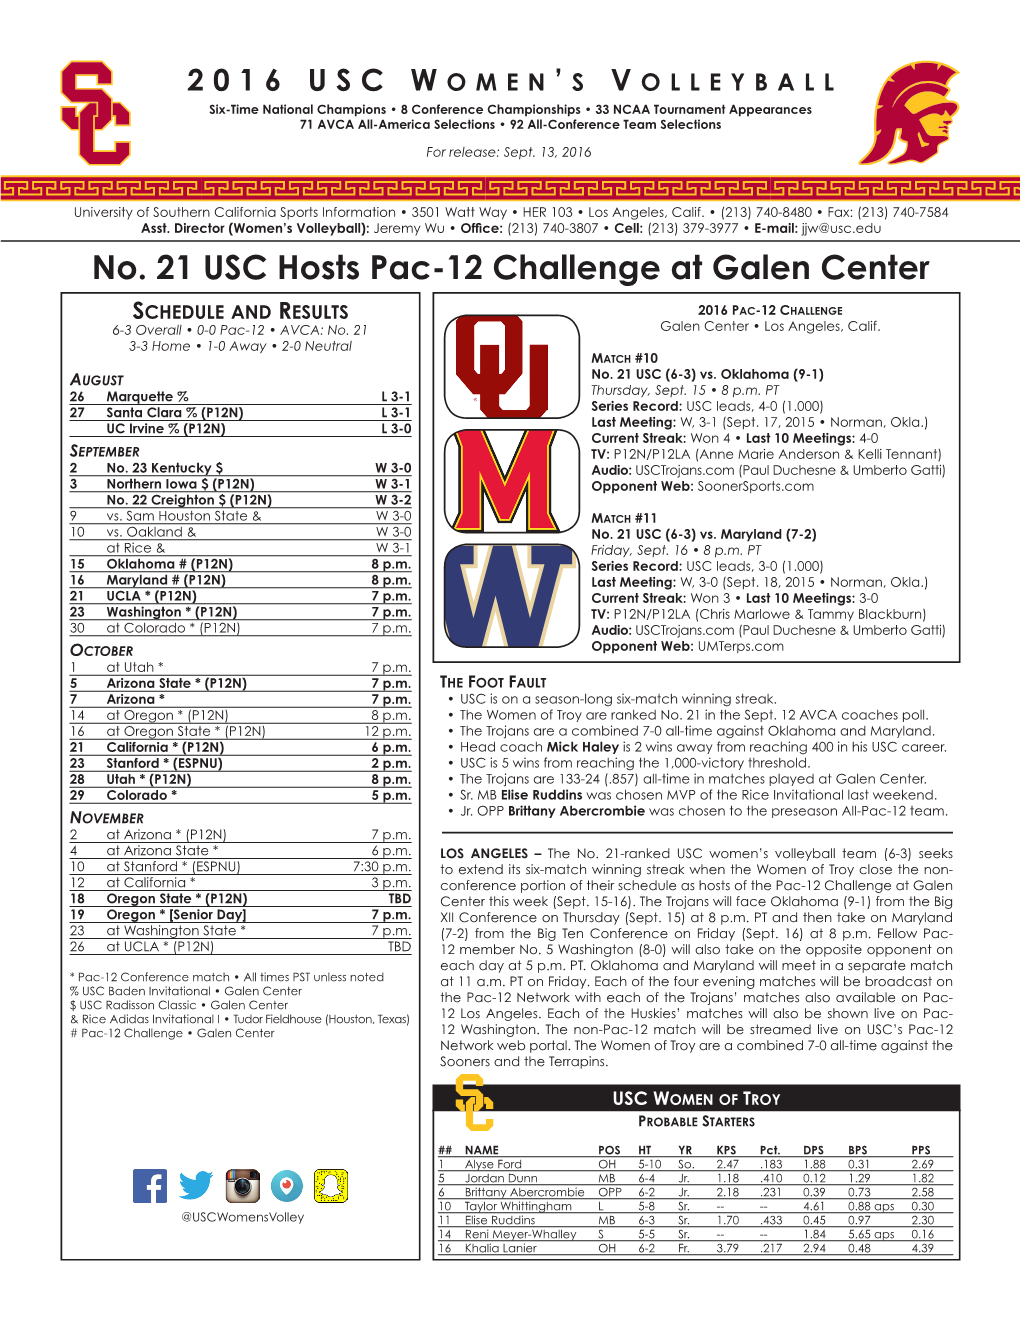 No. 21 USC Hosts Pac-12 Challenge at Galen Center